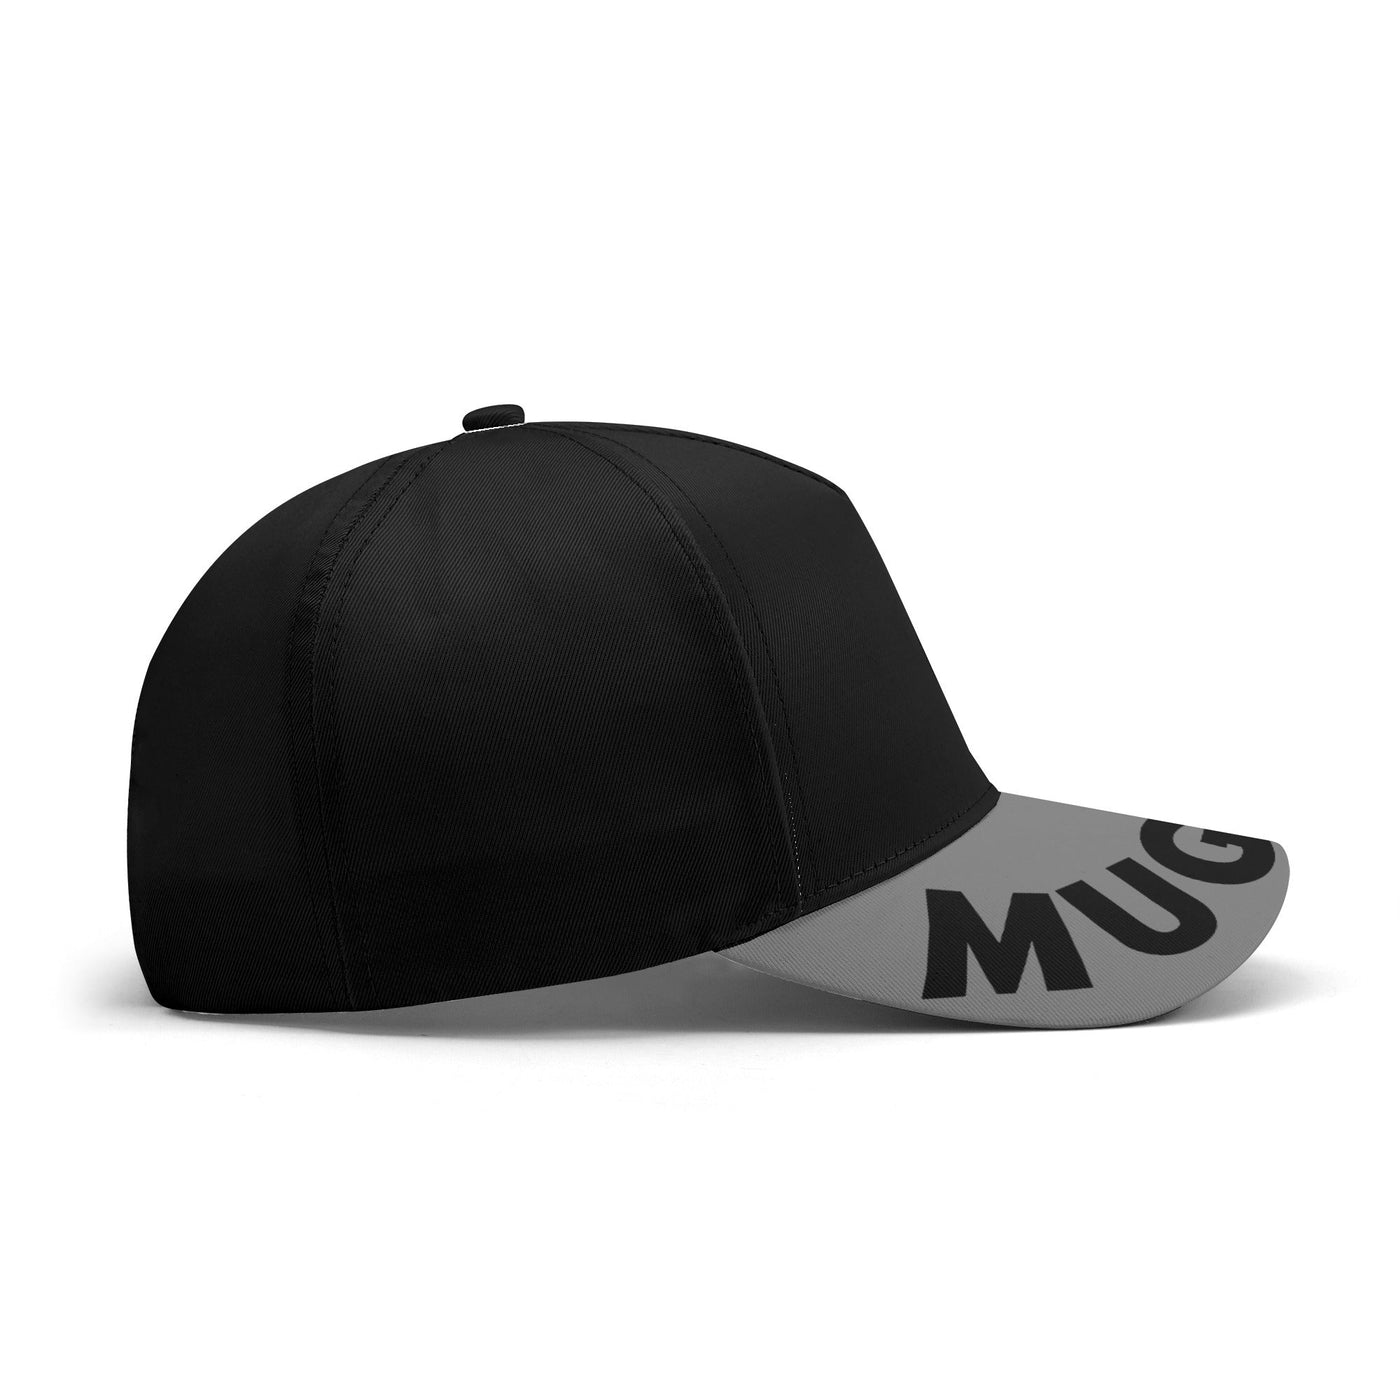 Mugatu "Zoolander" Fashion Freak Hat